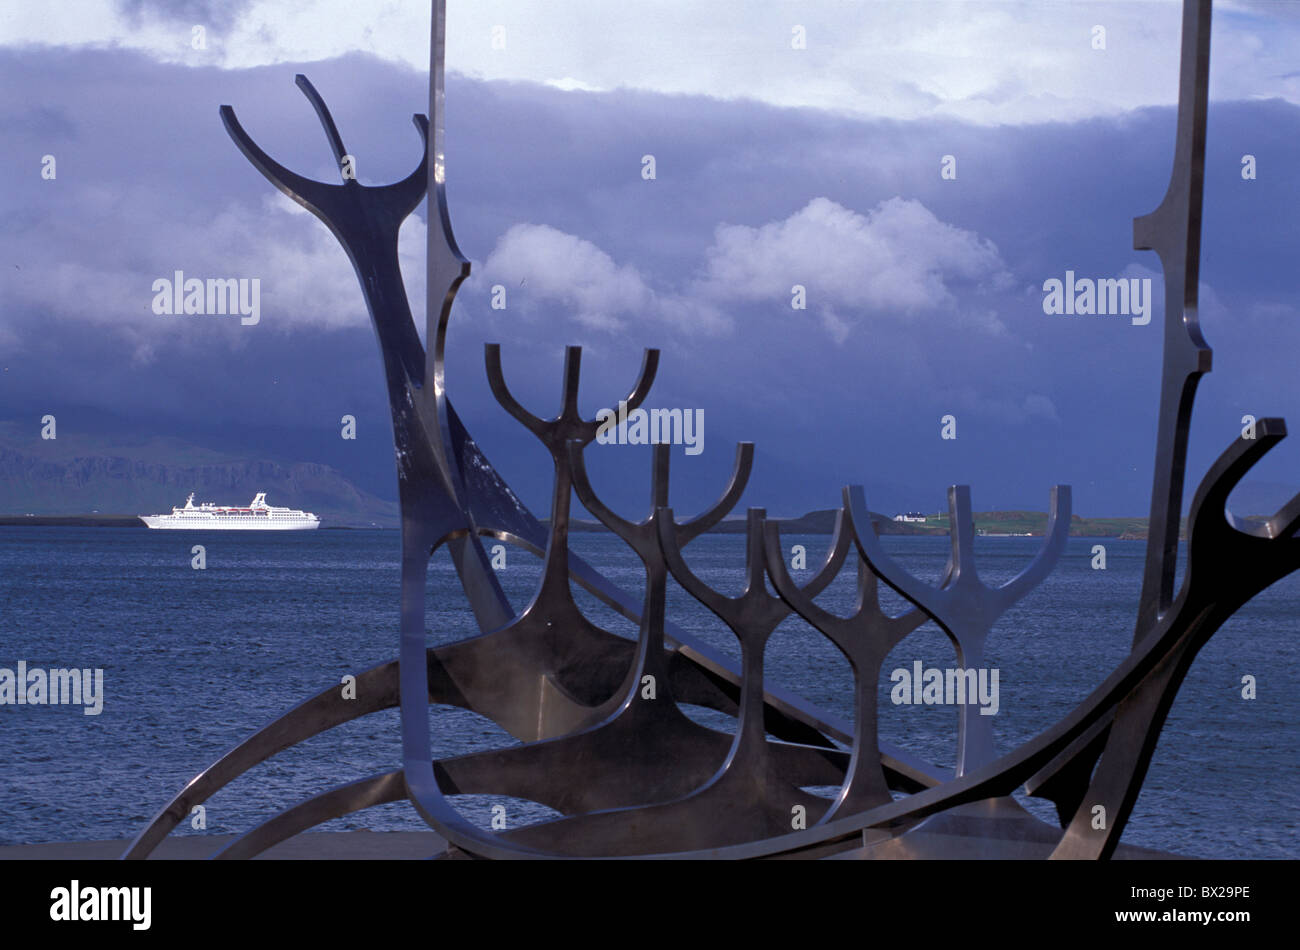 Europe Islande Reykjavik Arctique bateau viking art moderne sculpture mer côte Banque D'Images